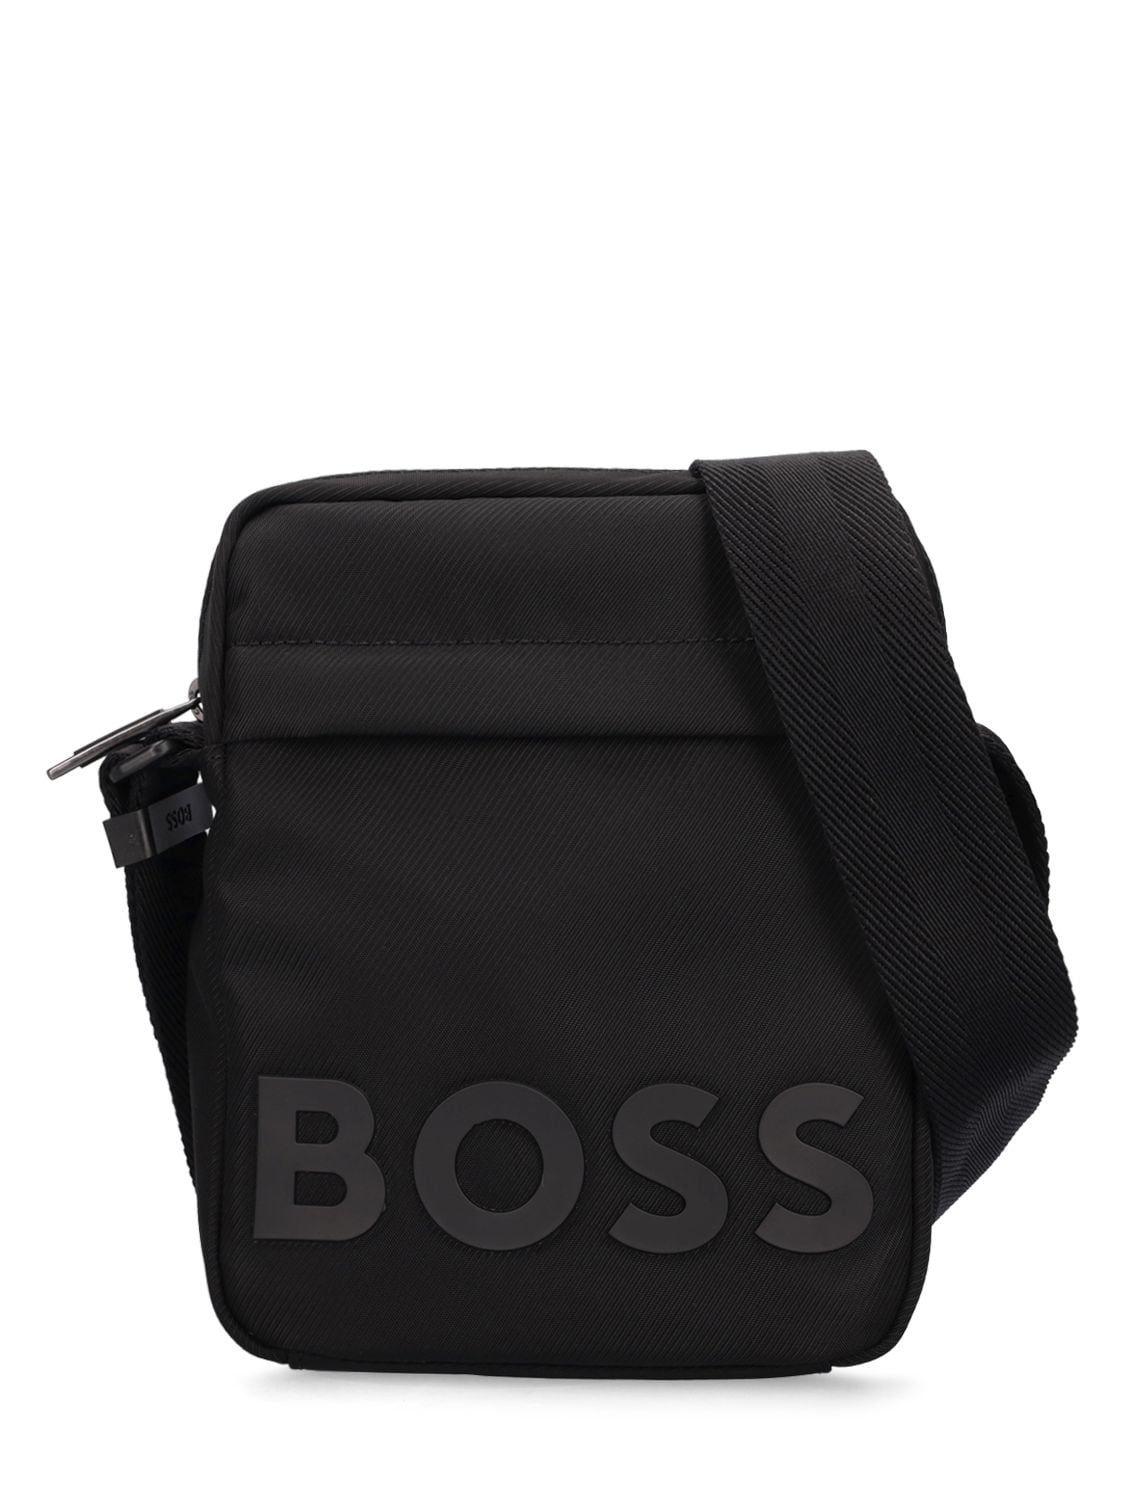 BOSS by HUGO BOSS Catch 2.0ds Logo Tech Crossbody Bag in Black for Men ...